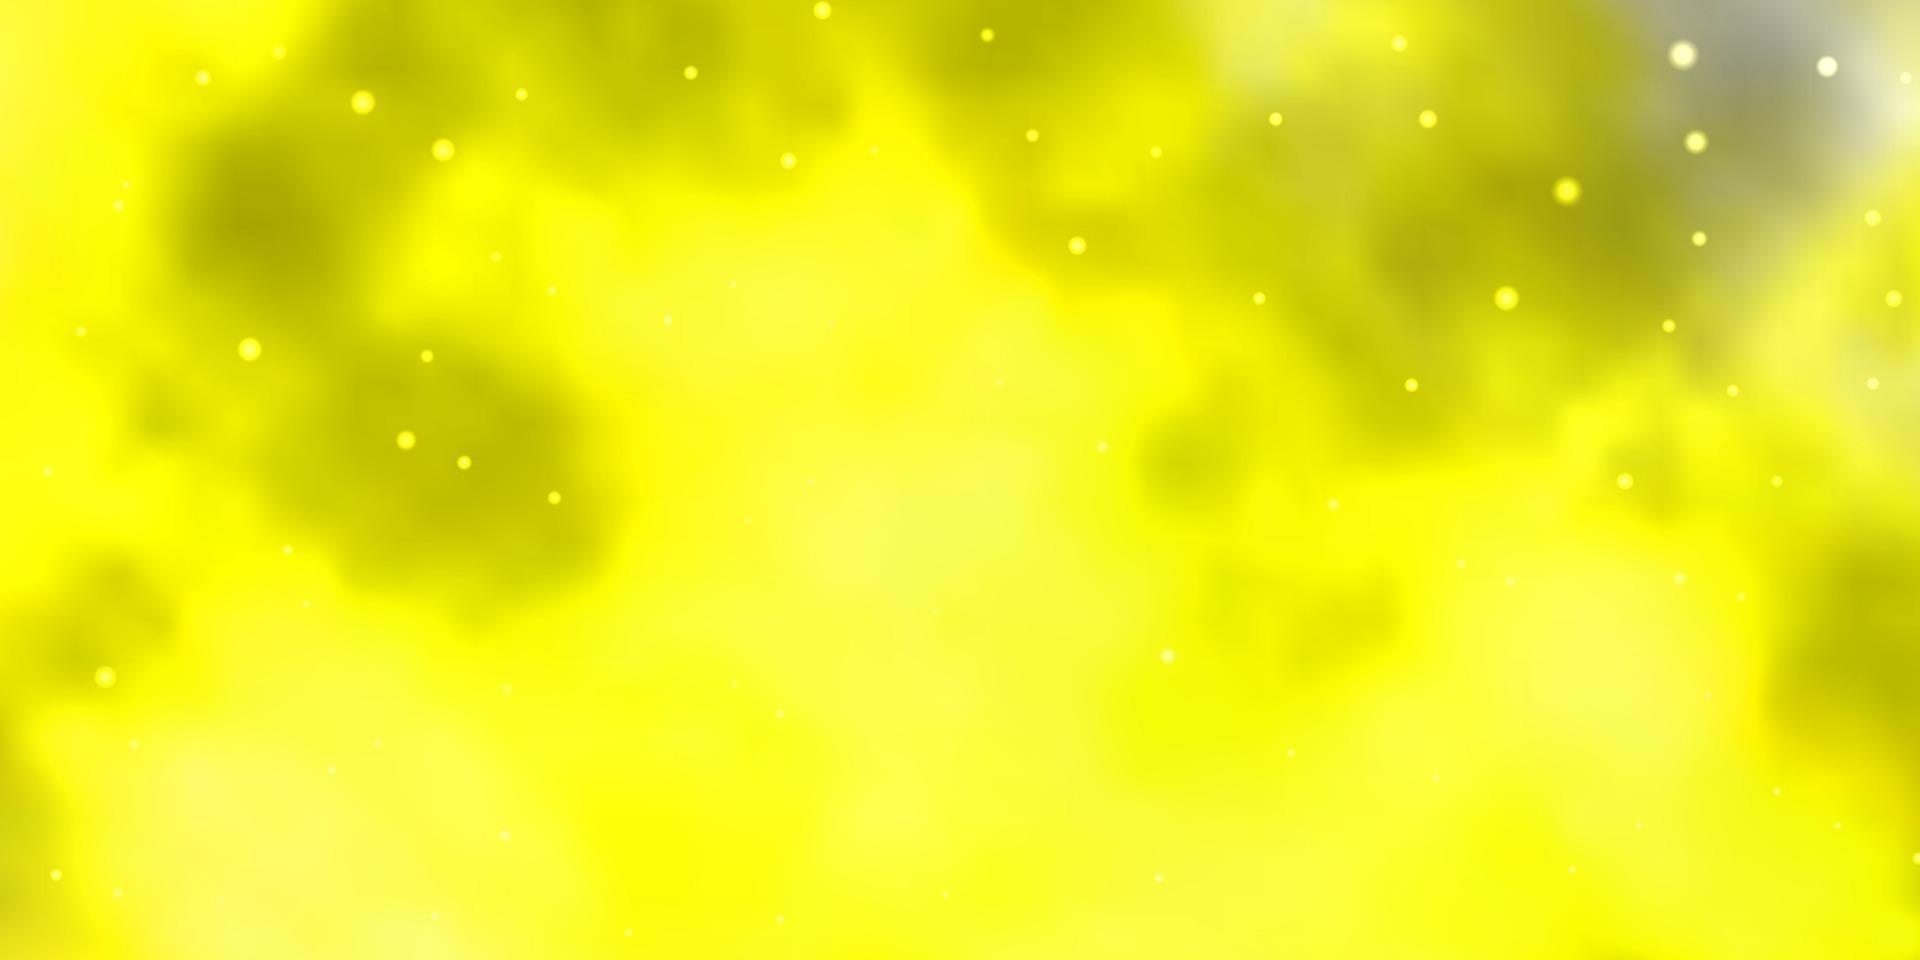 modèle vectoriel jaune clair avec des étoiles abstraites.